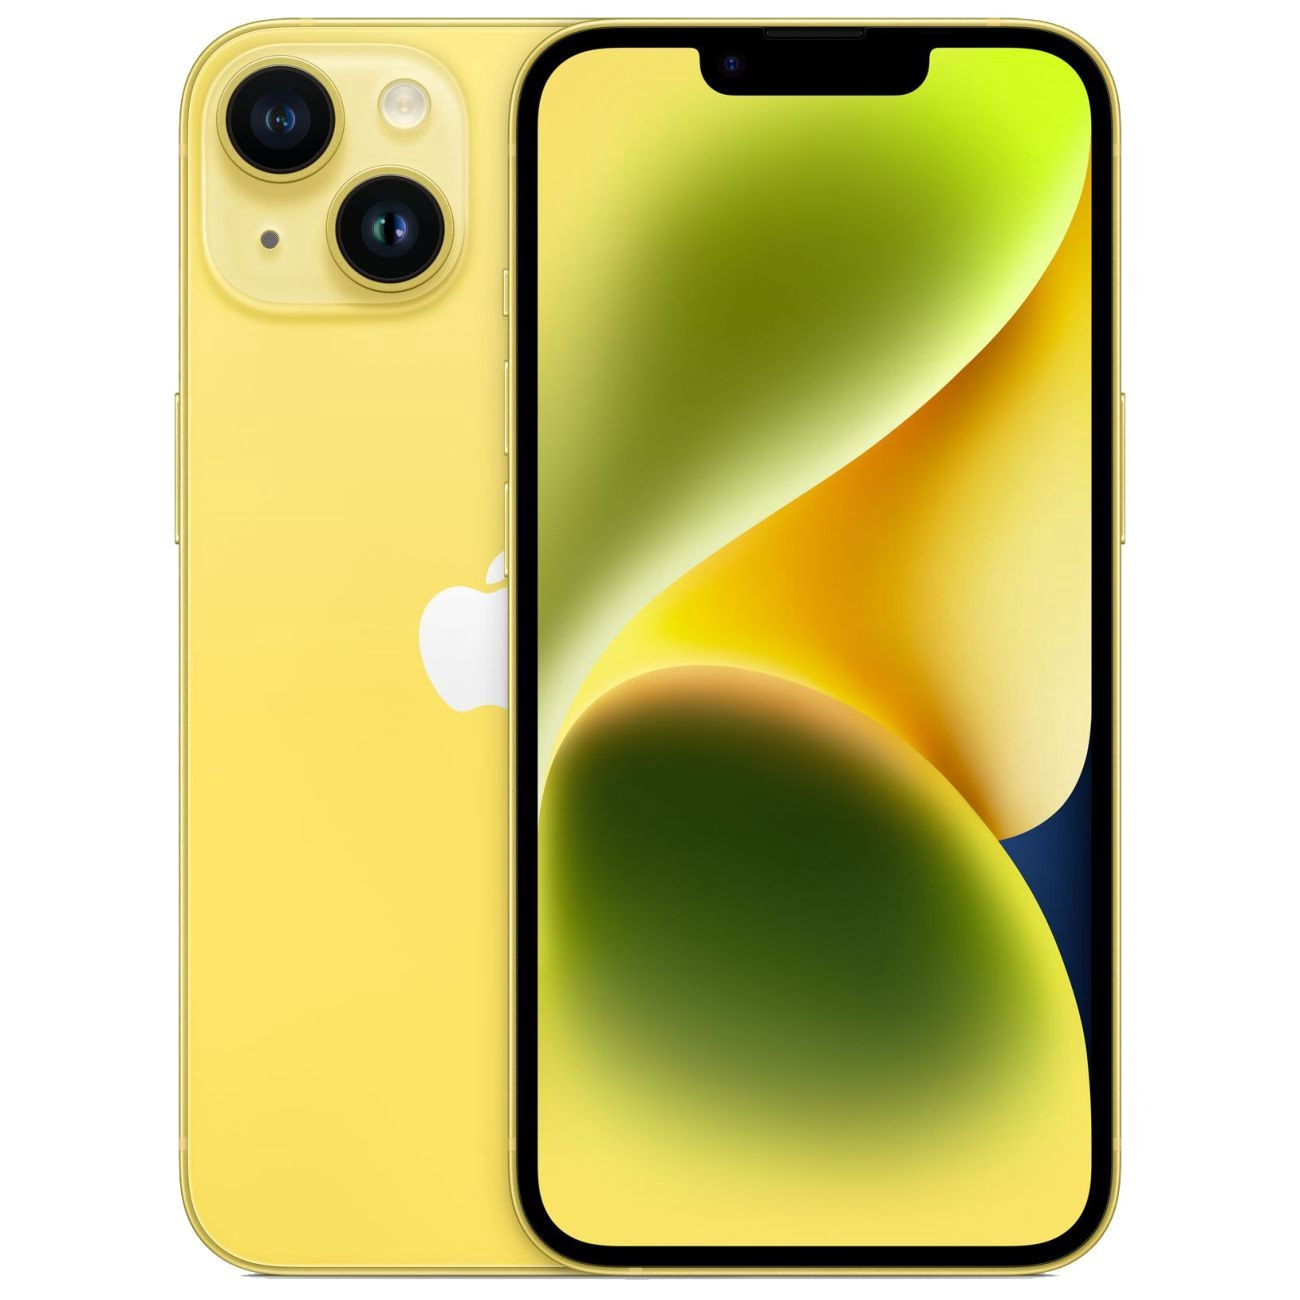 Купить смартфон apple iphone 14 512gb yellow Apple iPhone 14 в официальном магазине Apple, Samsung, Xiaomi. iPixel.ru Купить, заказ, кредит, рассрочка, отзывы,  характеристики, цена,  фотографии, в подарок.